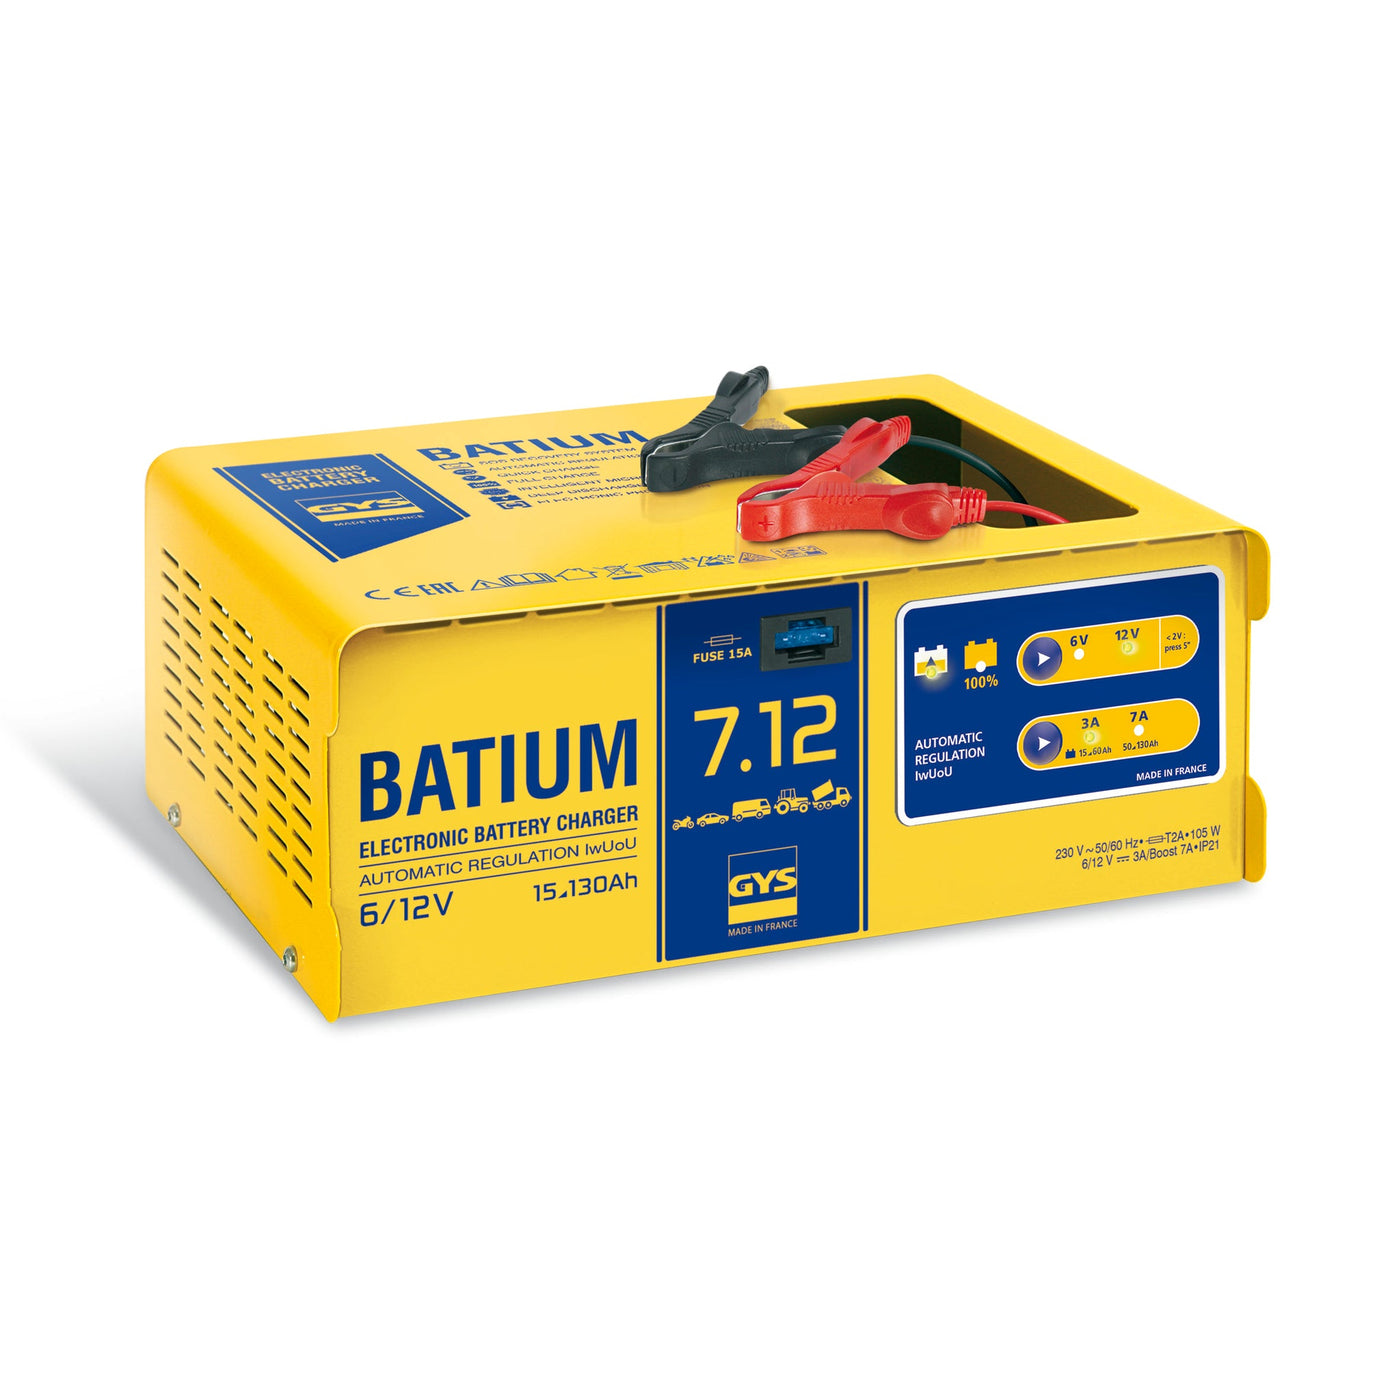 GYS 024557 Batium 7.12